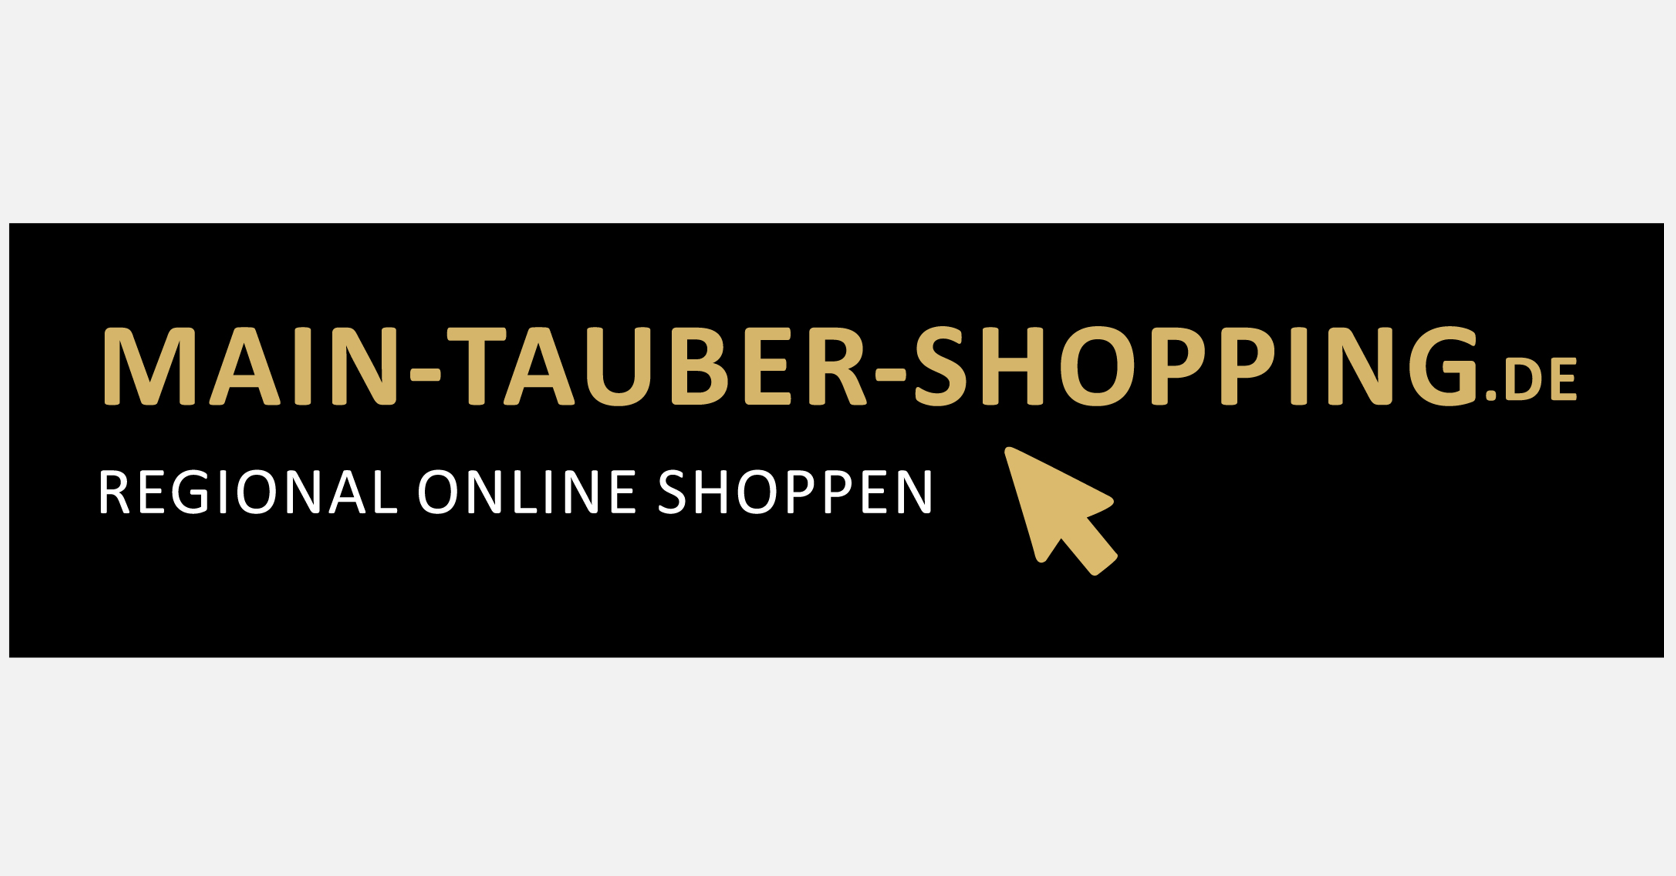 www.main-tauber-shopping.de